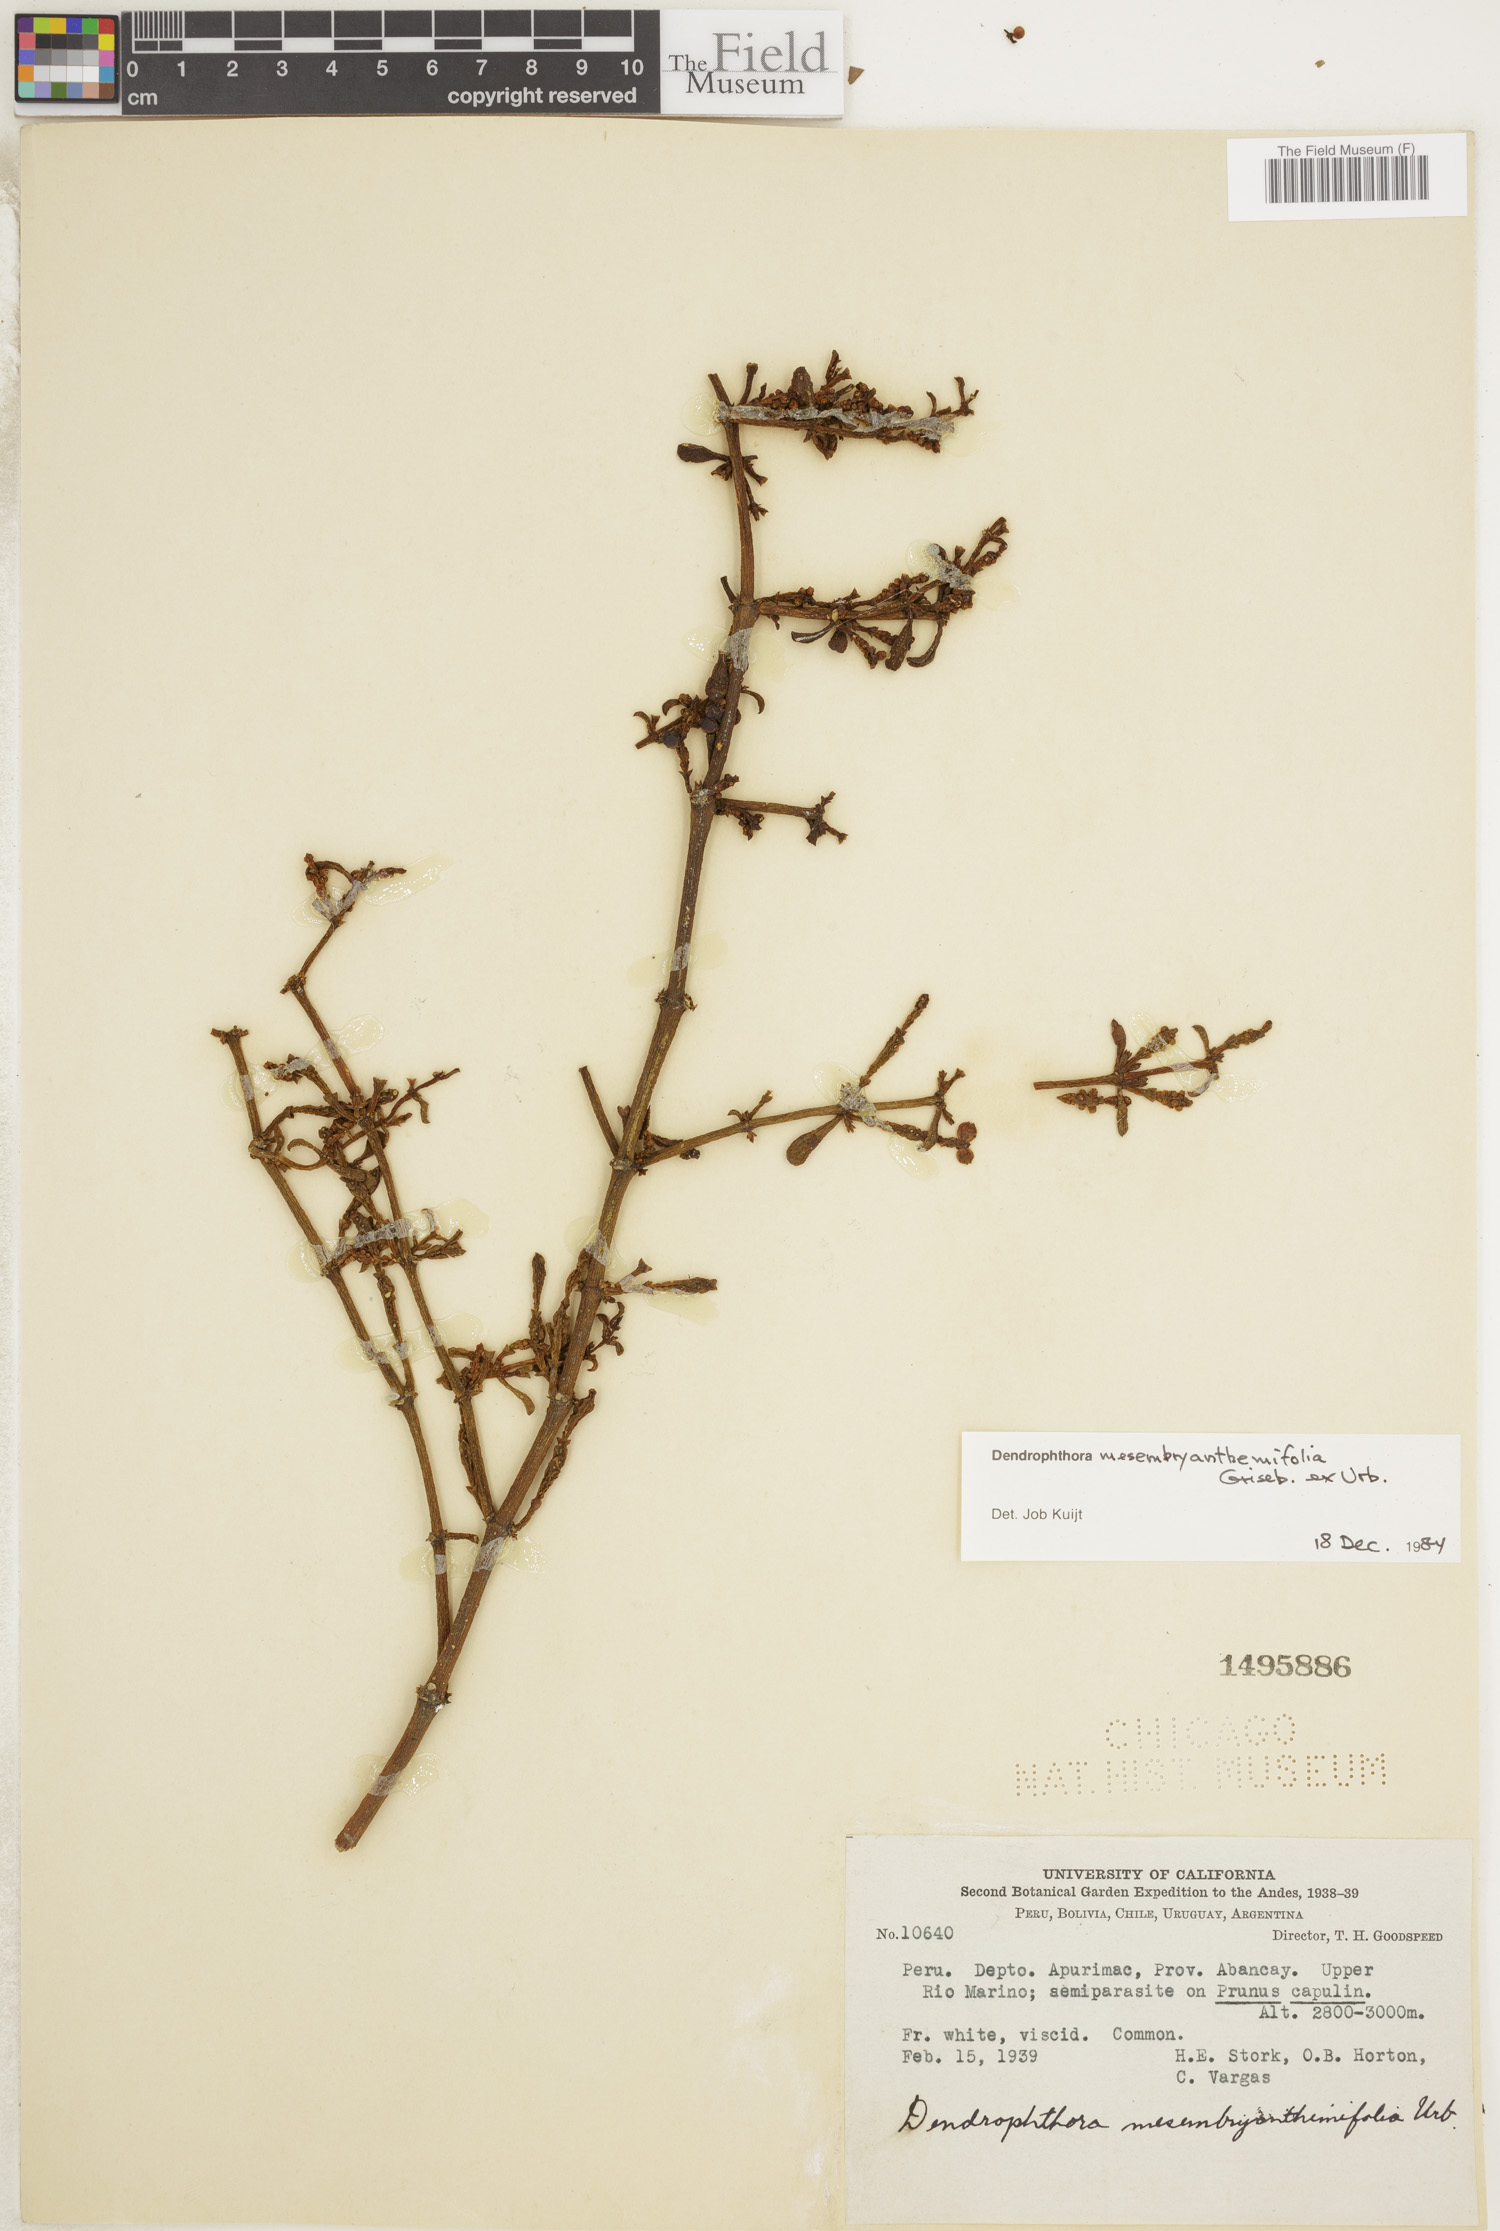 Dendrophthora mesembryanthemifolia image